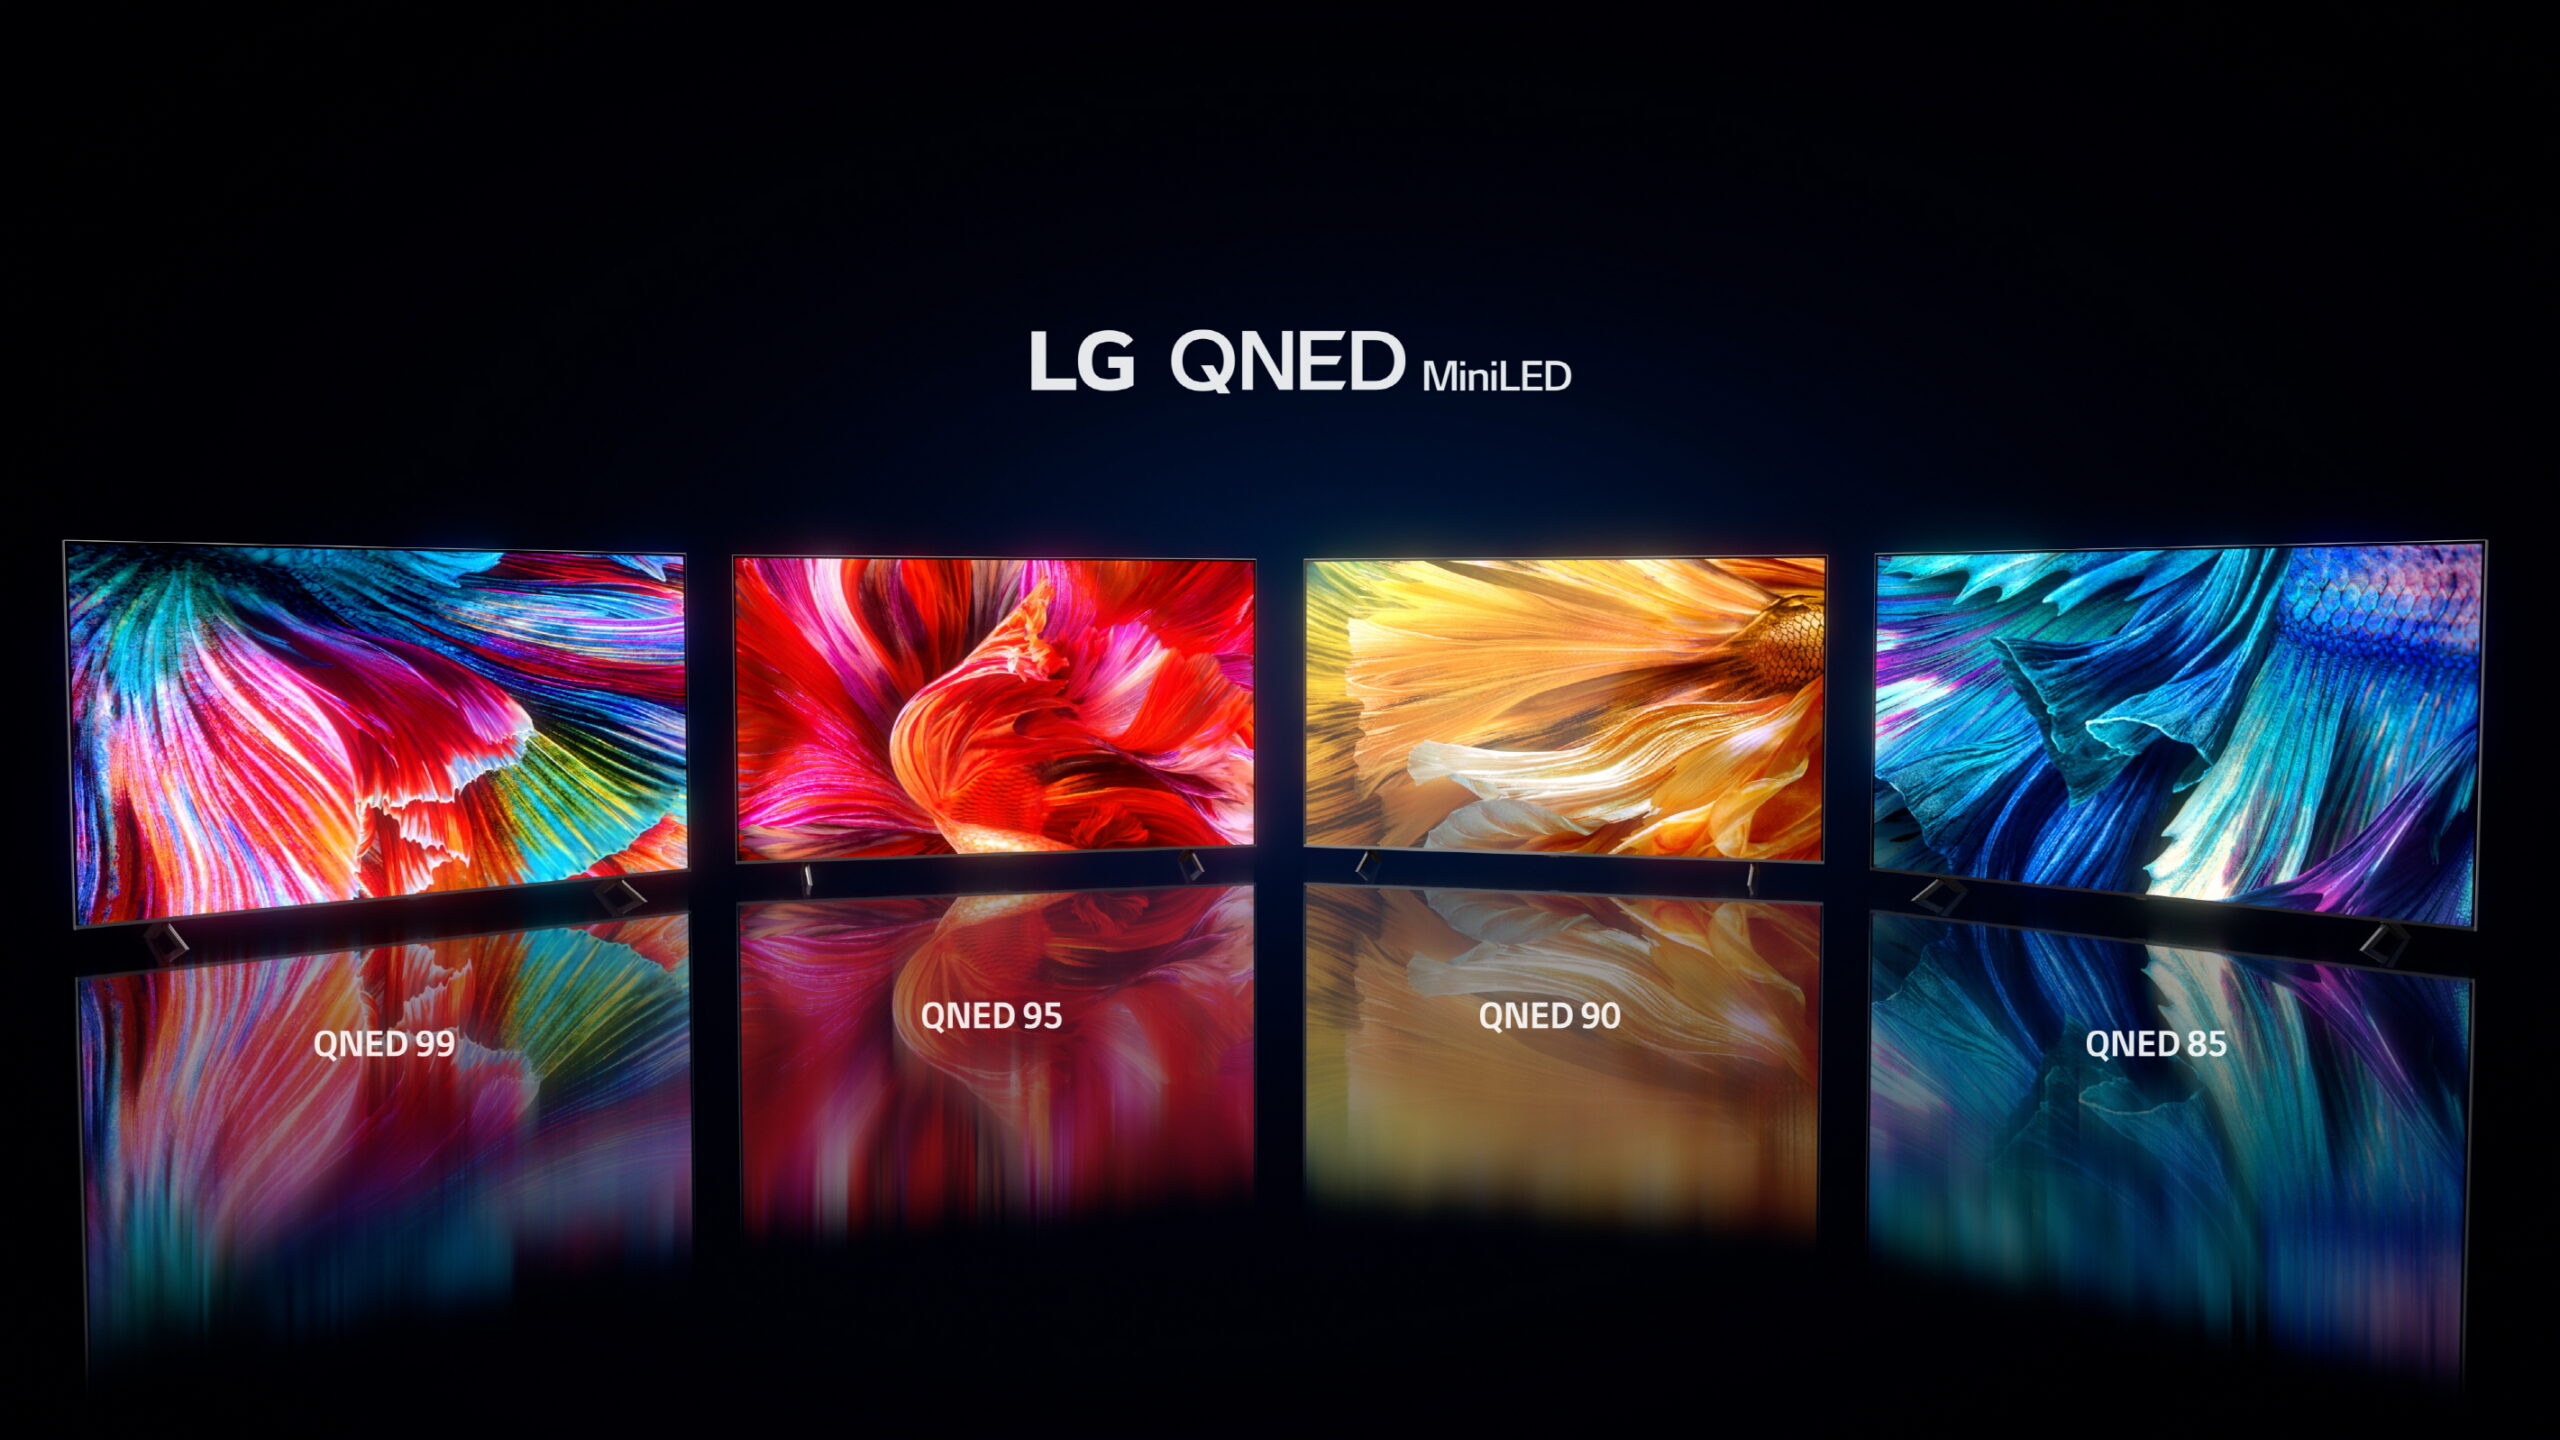 LG påbörjar global utrullning av årets nya tv-modeller